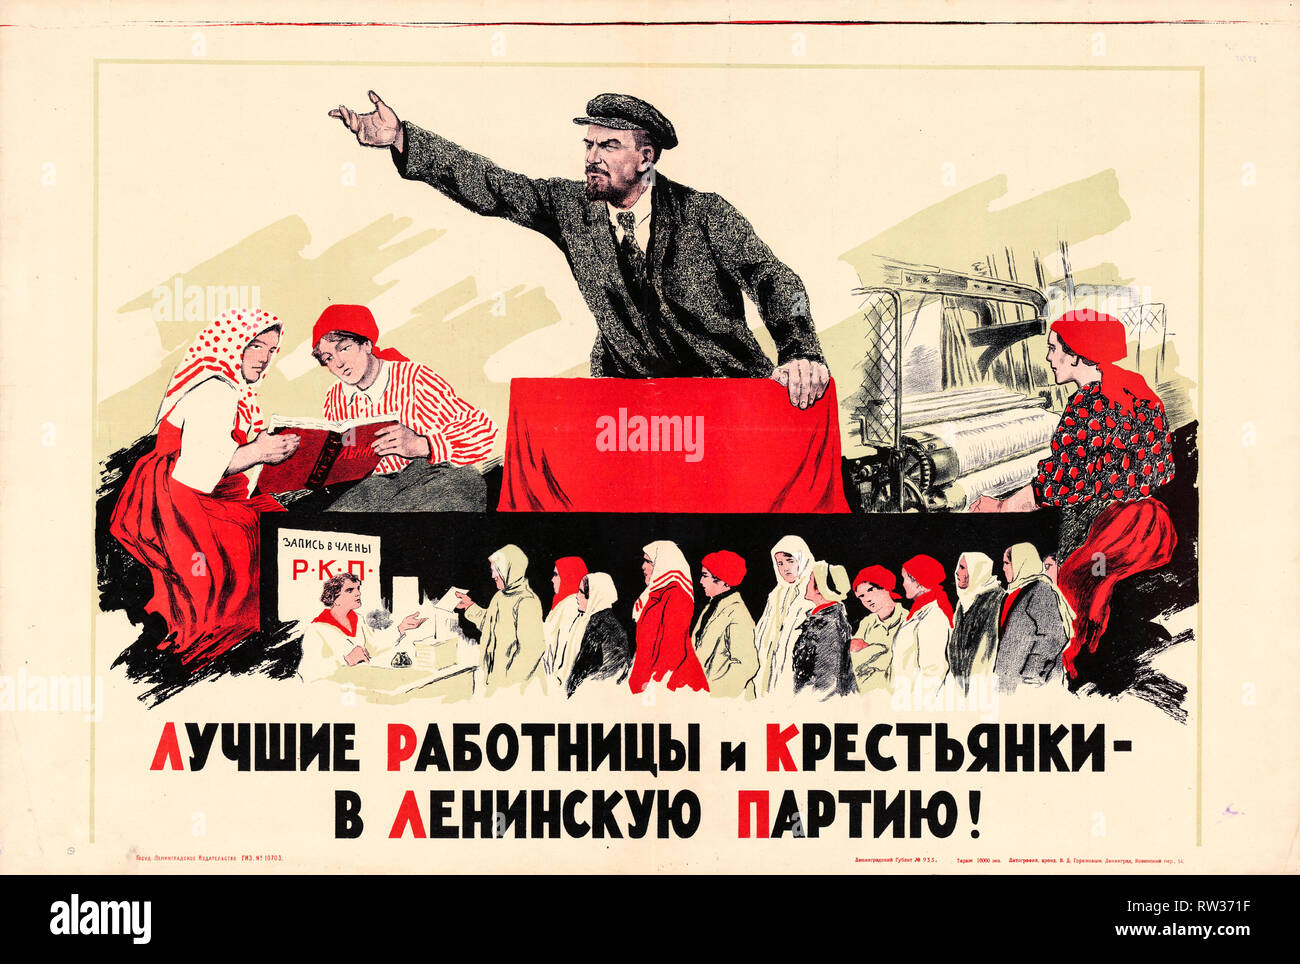 Lenin-Plakat, der beste Arbeiter und Bauer in der Lenin-Partei!, 1925, sowjetisches Propagandaplakat Stockfoto